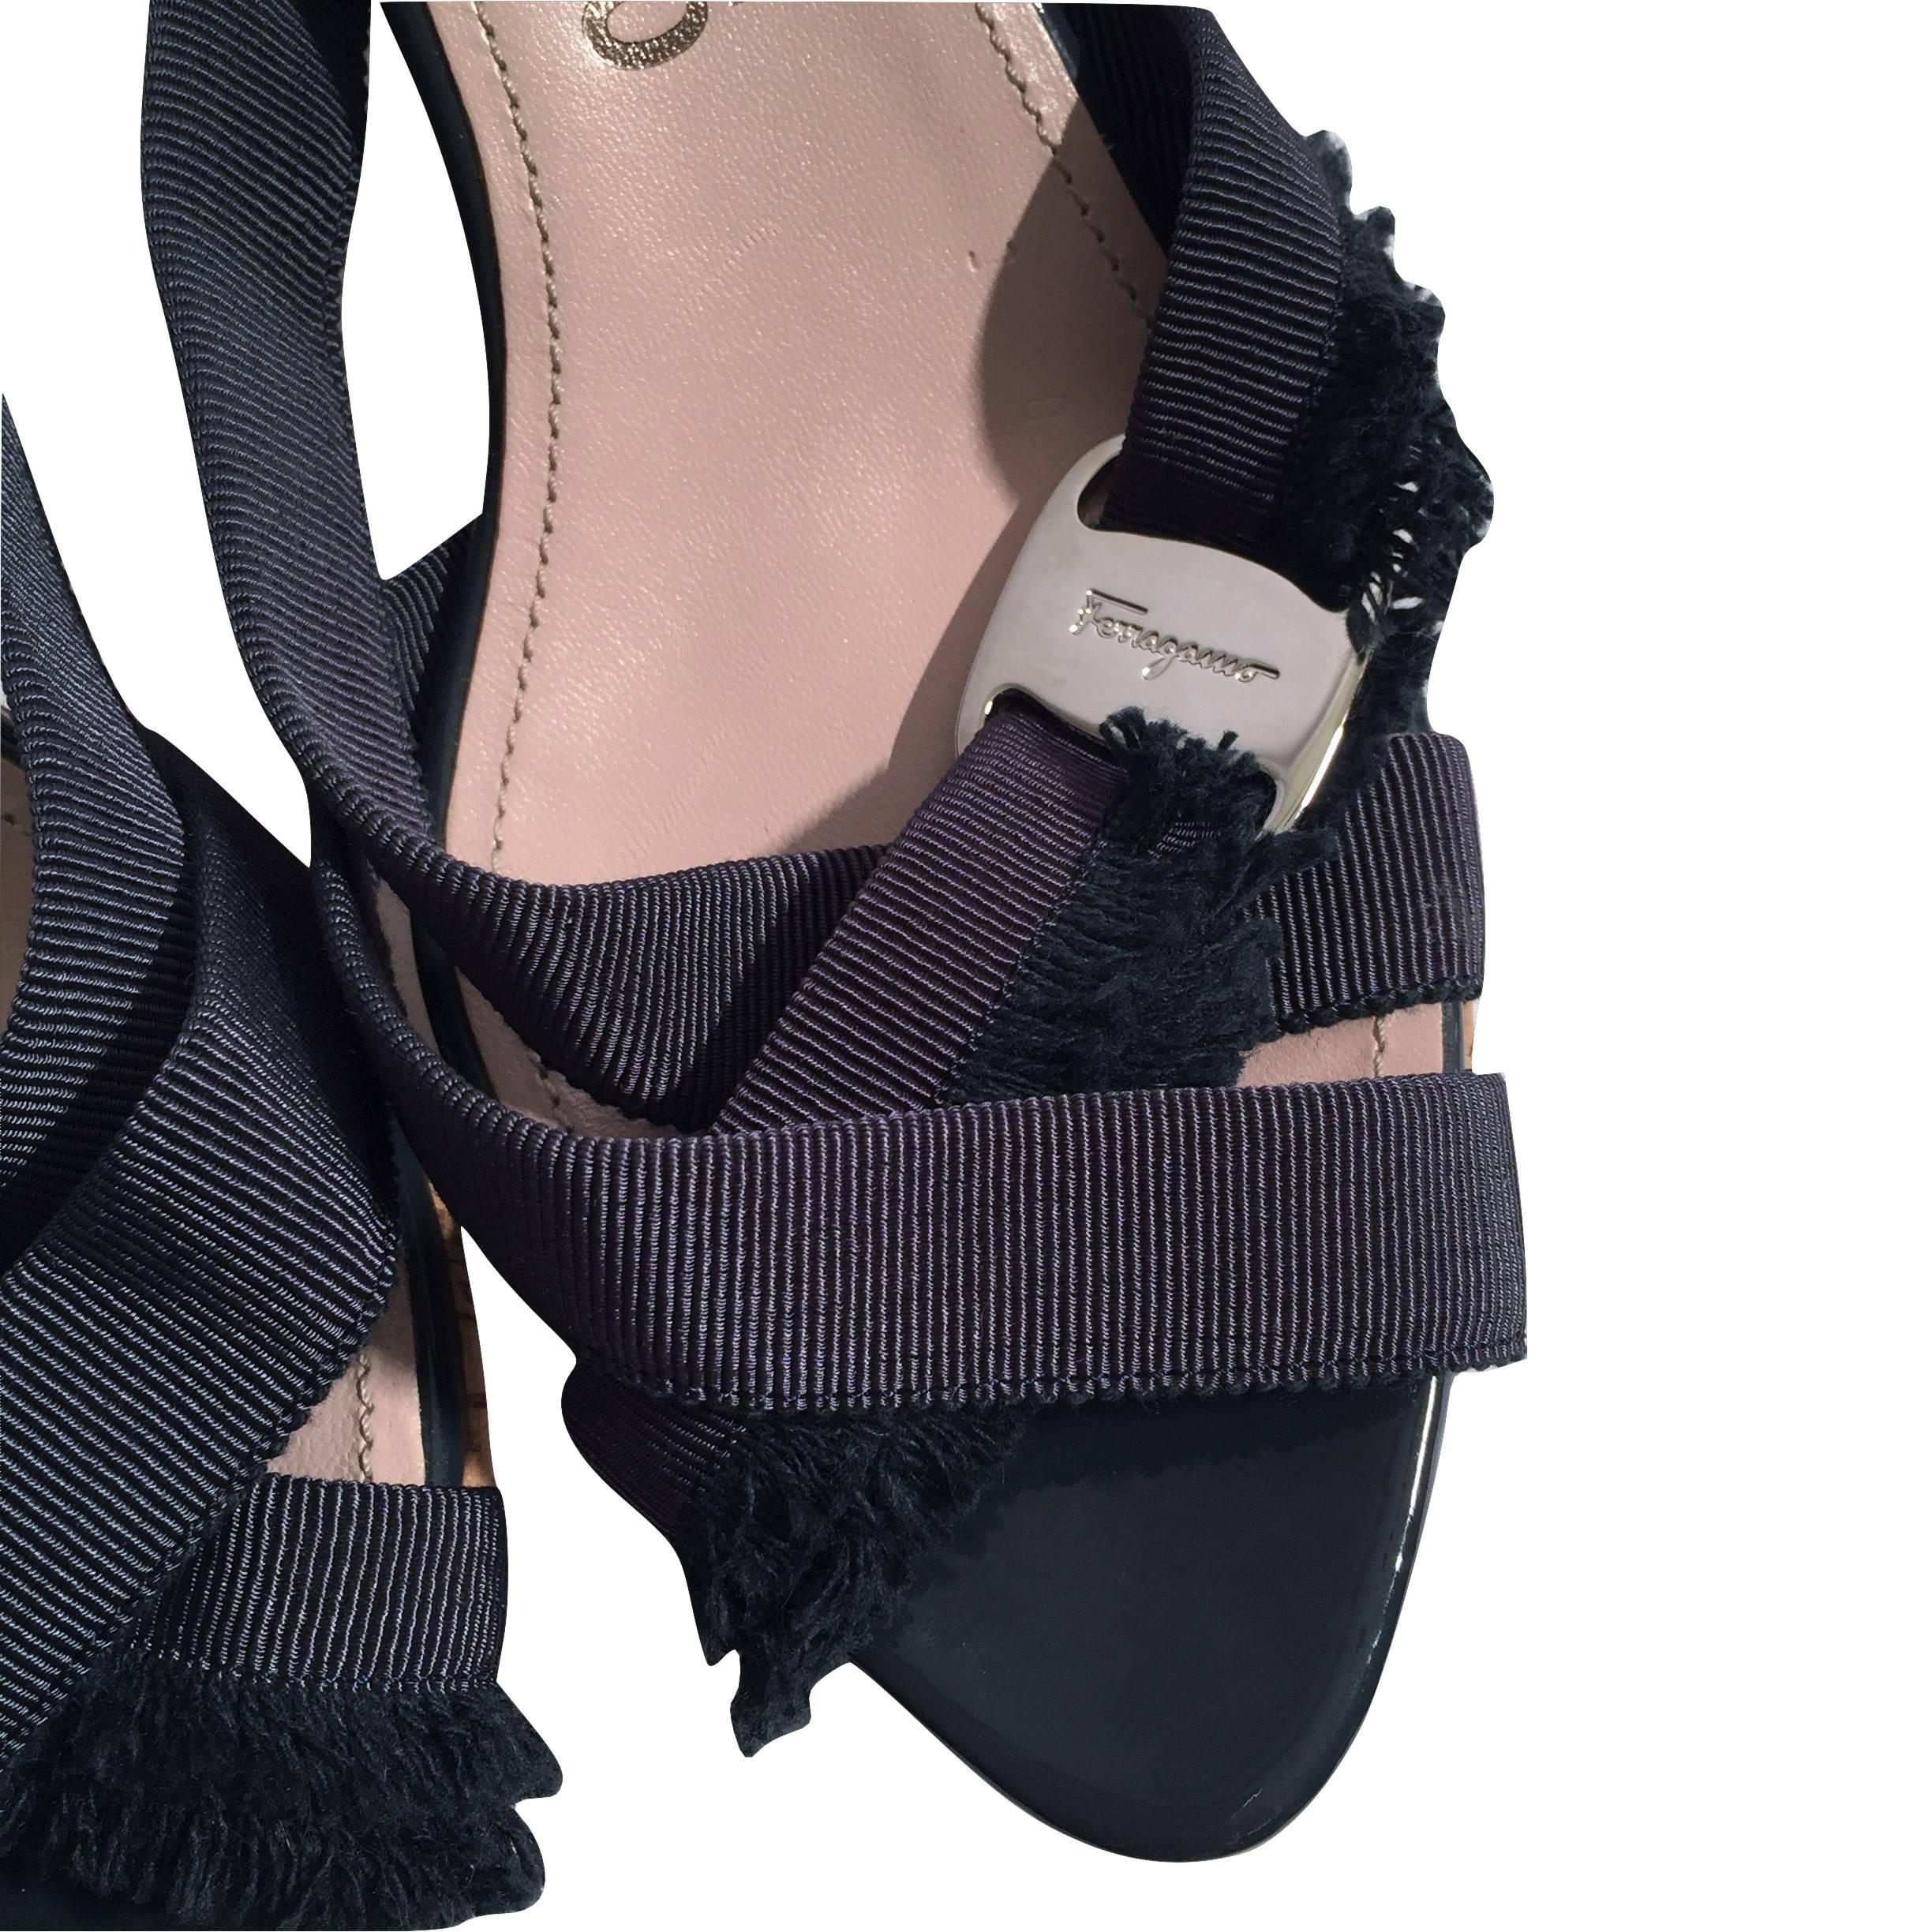 Women's New Size 8 Salvatore Ferragamo Wedge Platform Heels